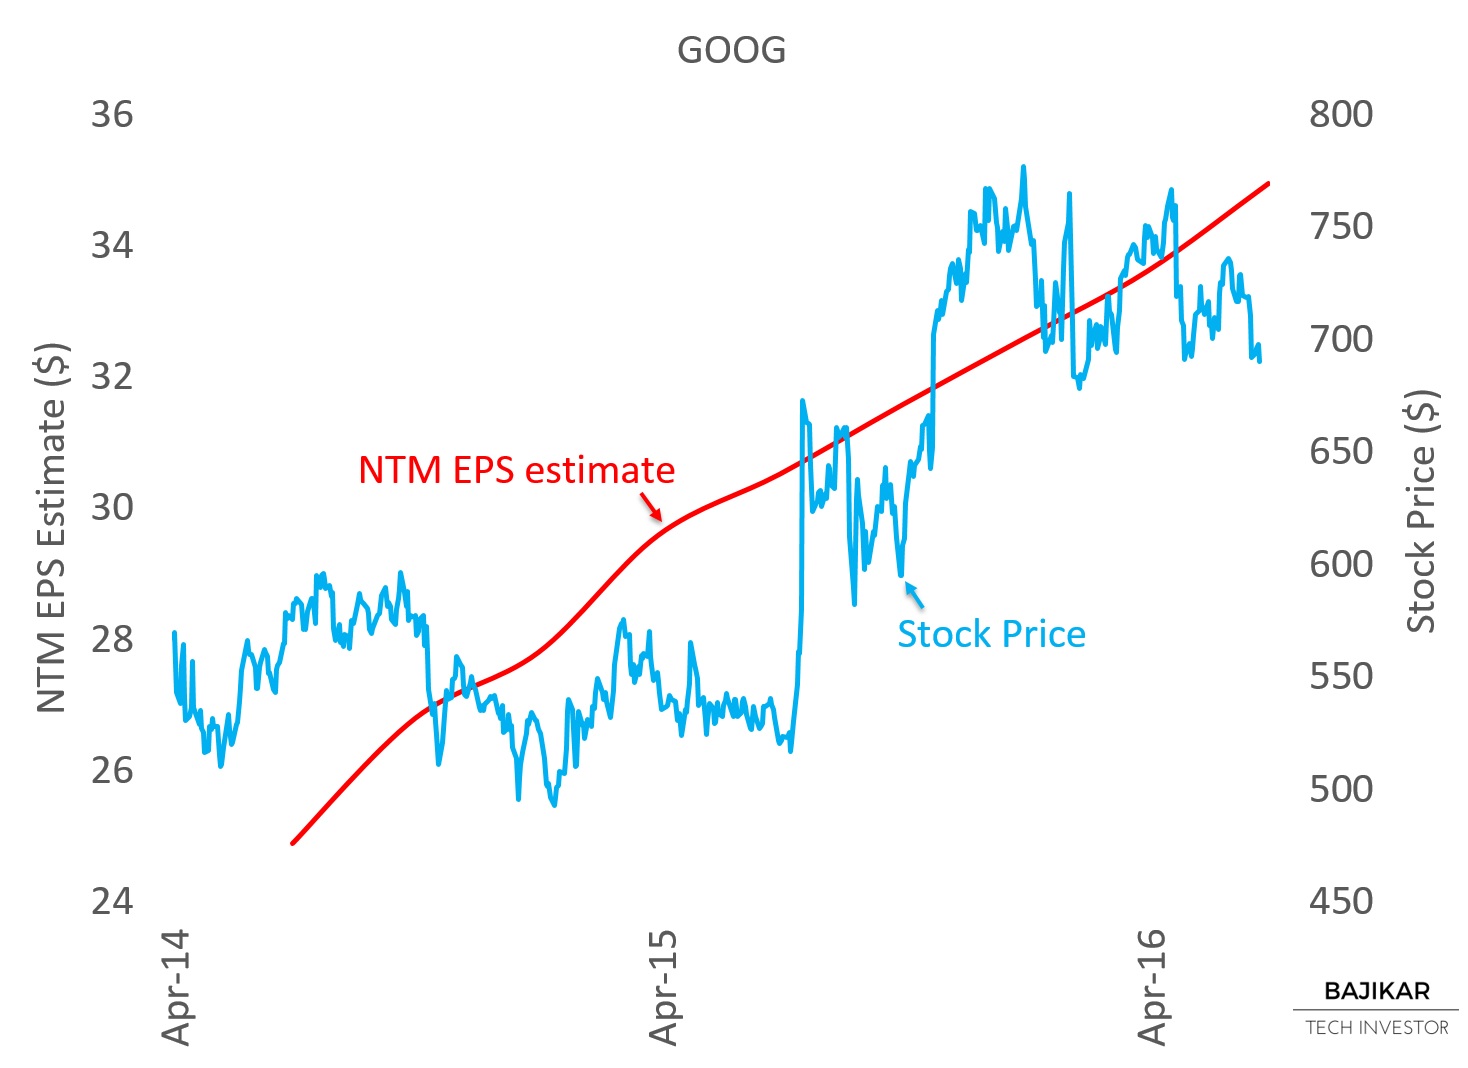 GOOG Stock Price vs. NTM EPS